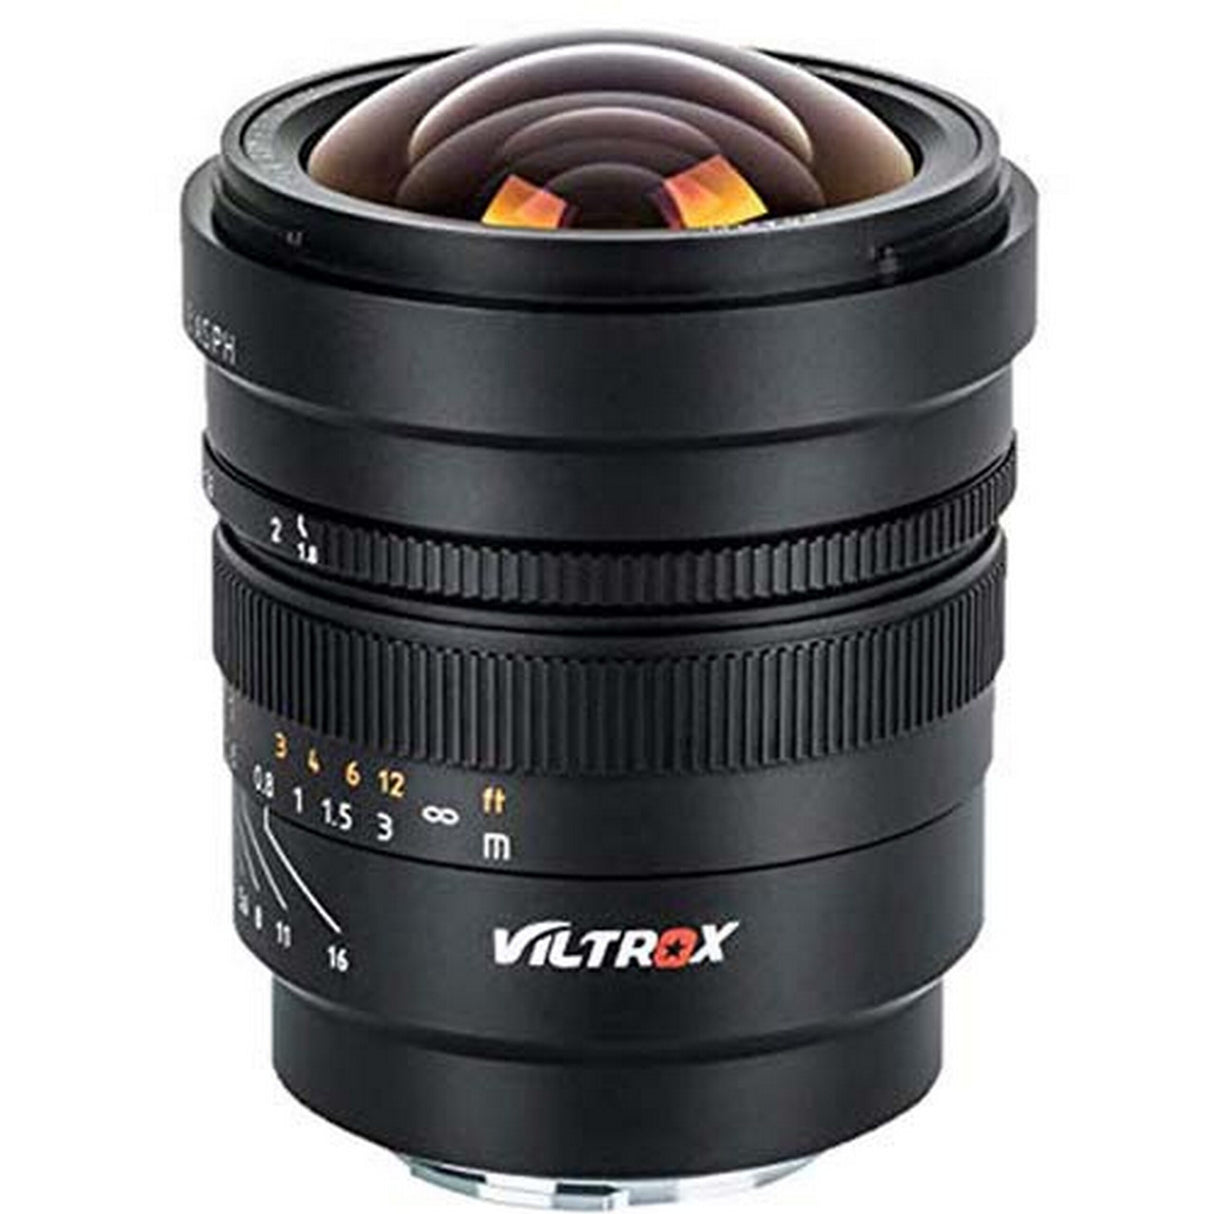 Viltrox FE-20MM 20mm F/1.8 ASPH PFU RBMH Lens for Sony E